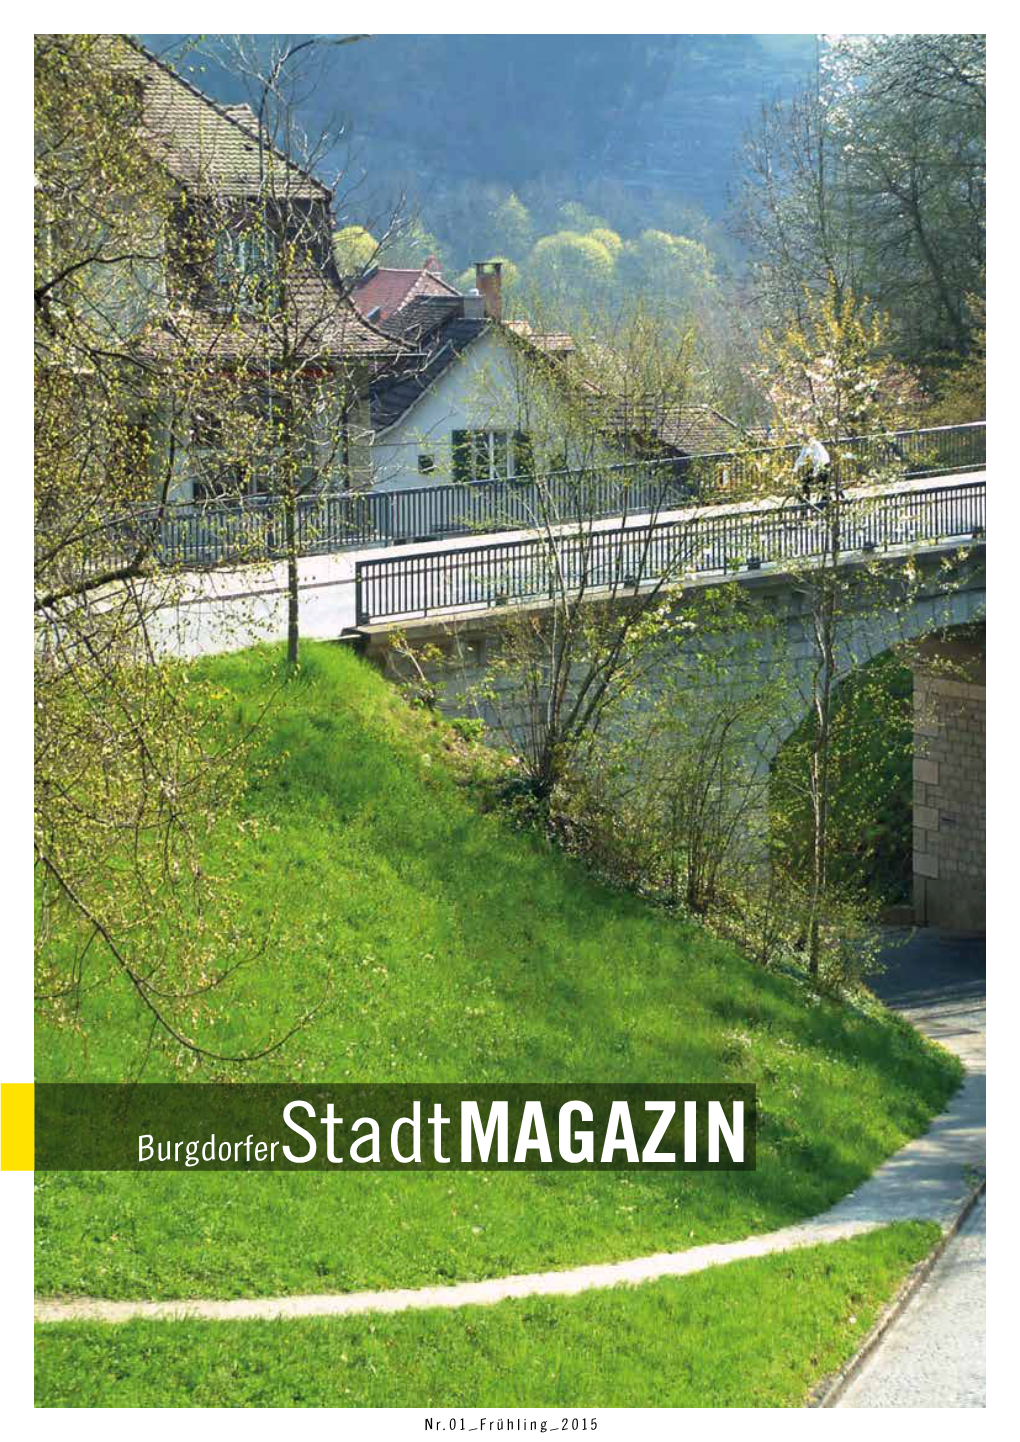 Burgdorferstadtmagazin